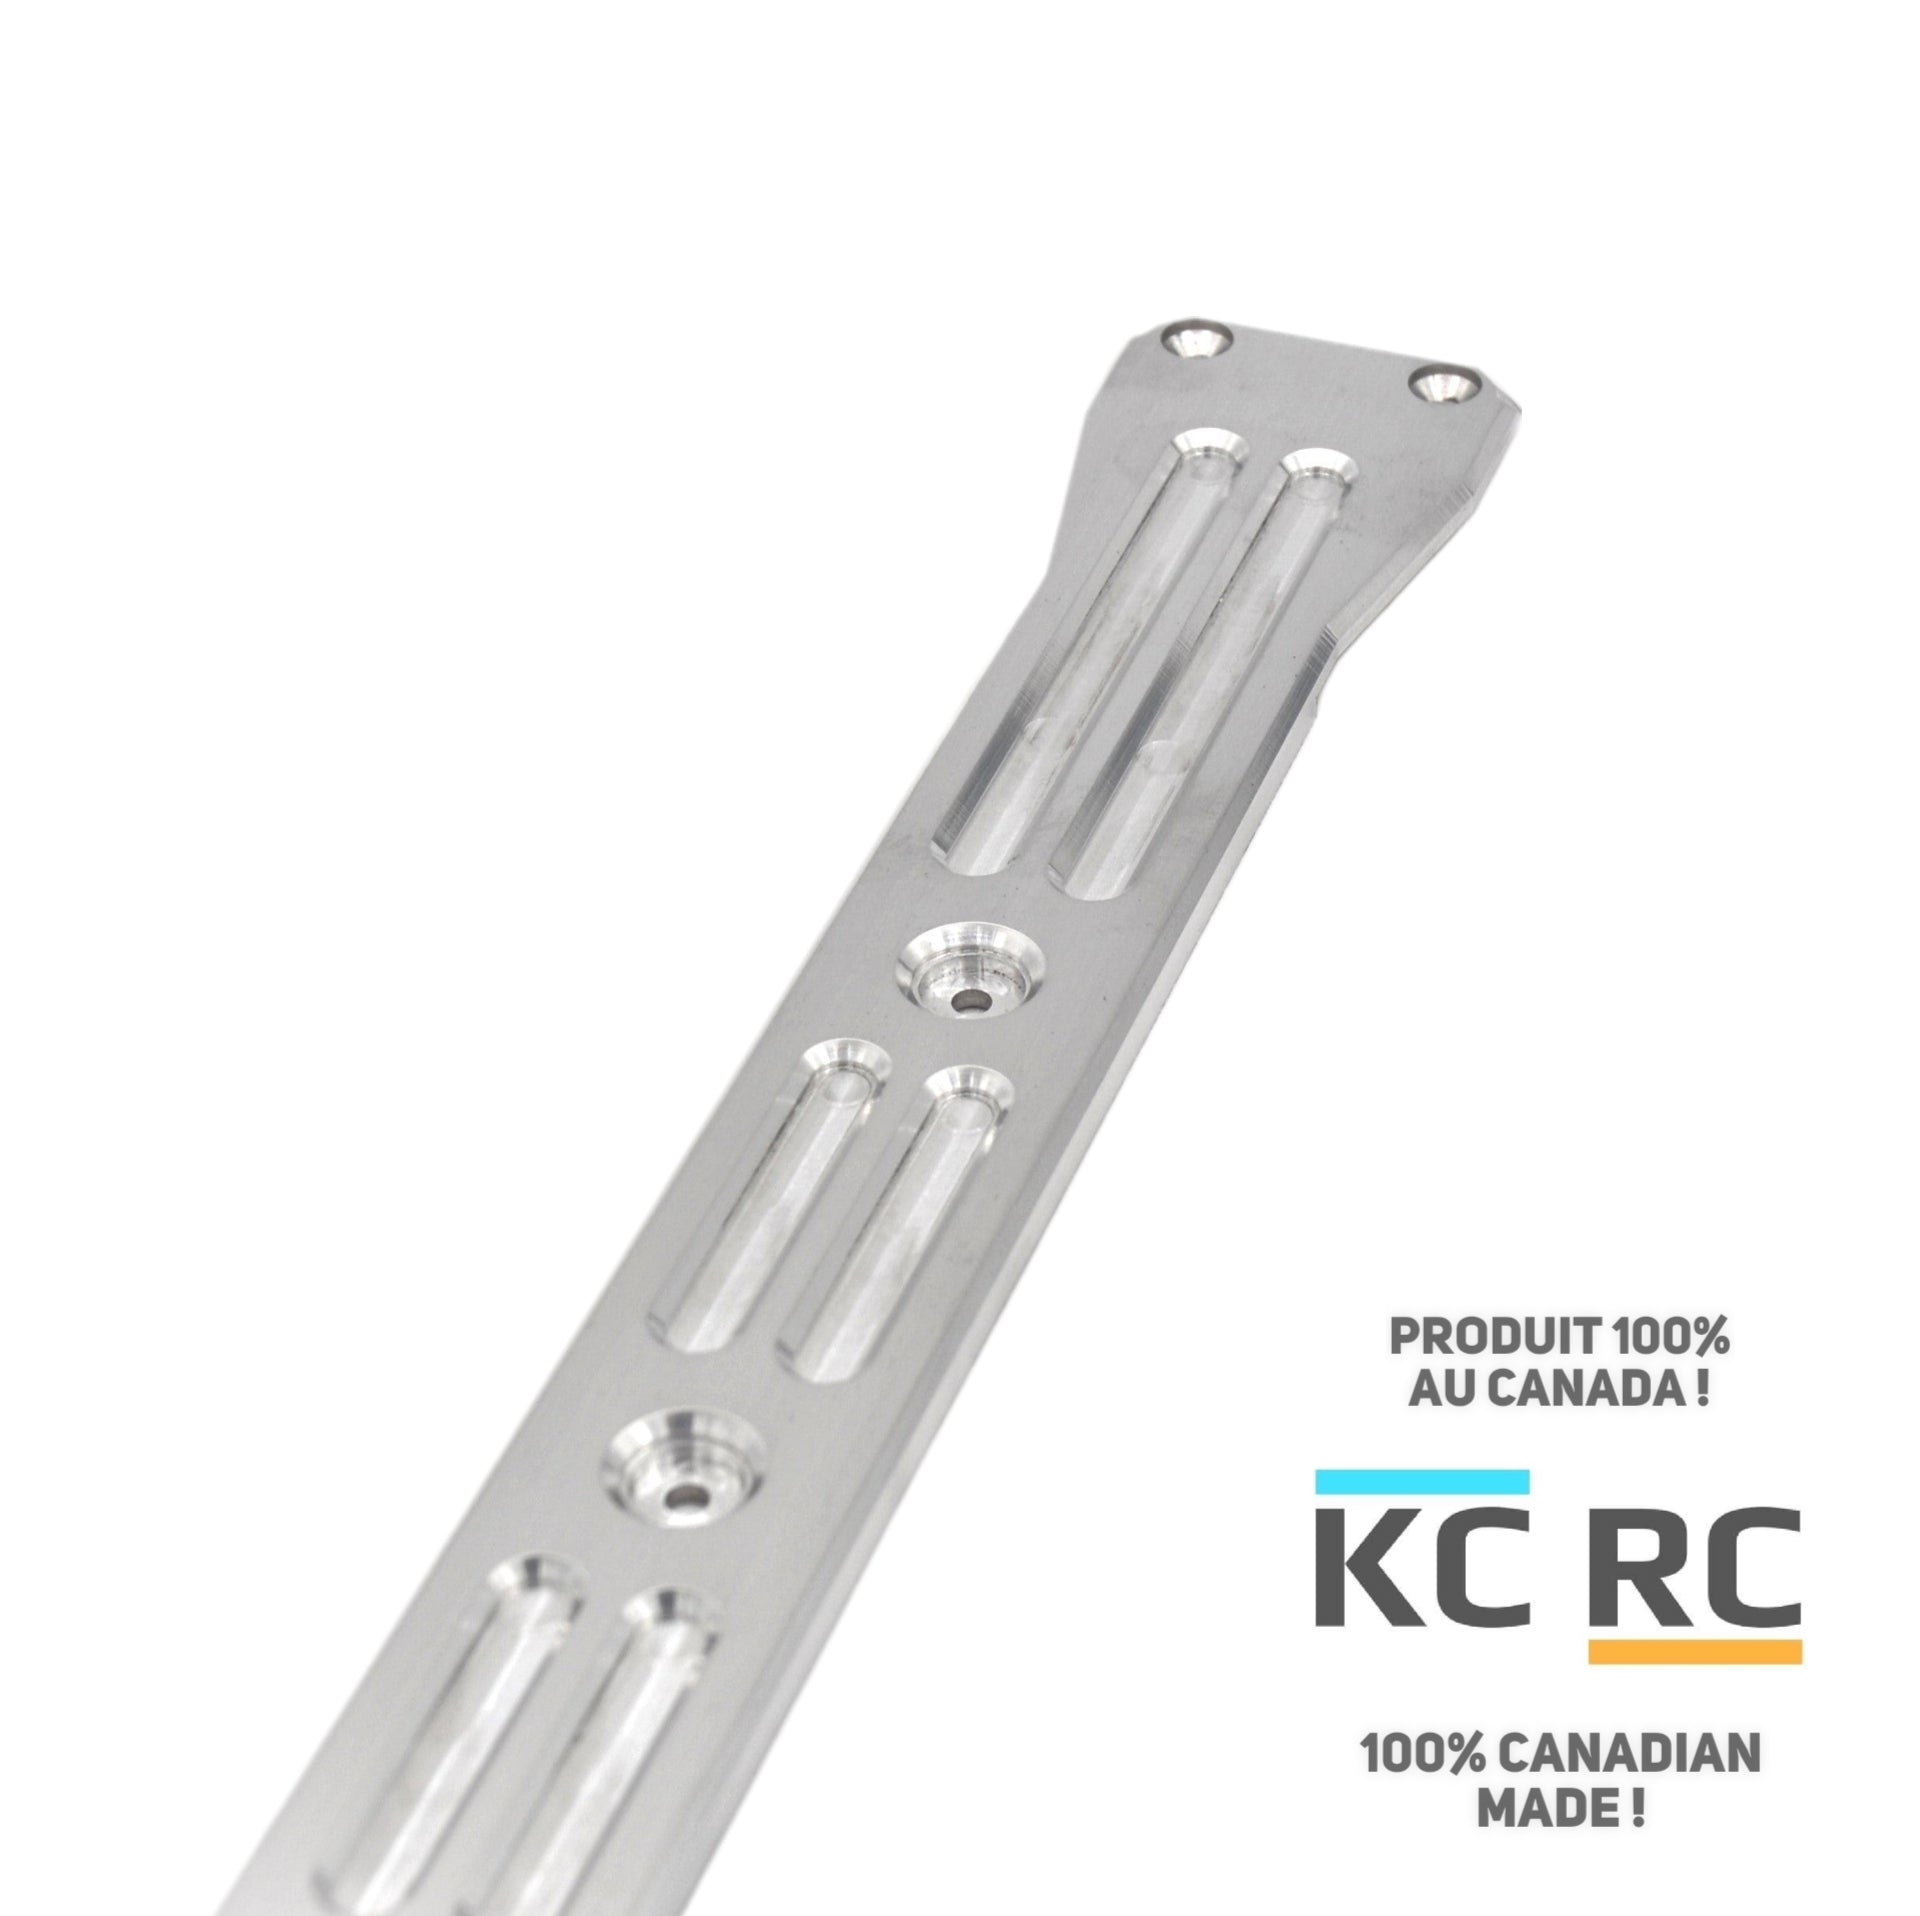 Plaque de protection KC RC 7075 T6 ( 6,35 mm ) pour Granite, Vorteks 3s